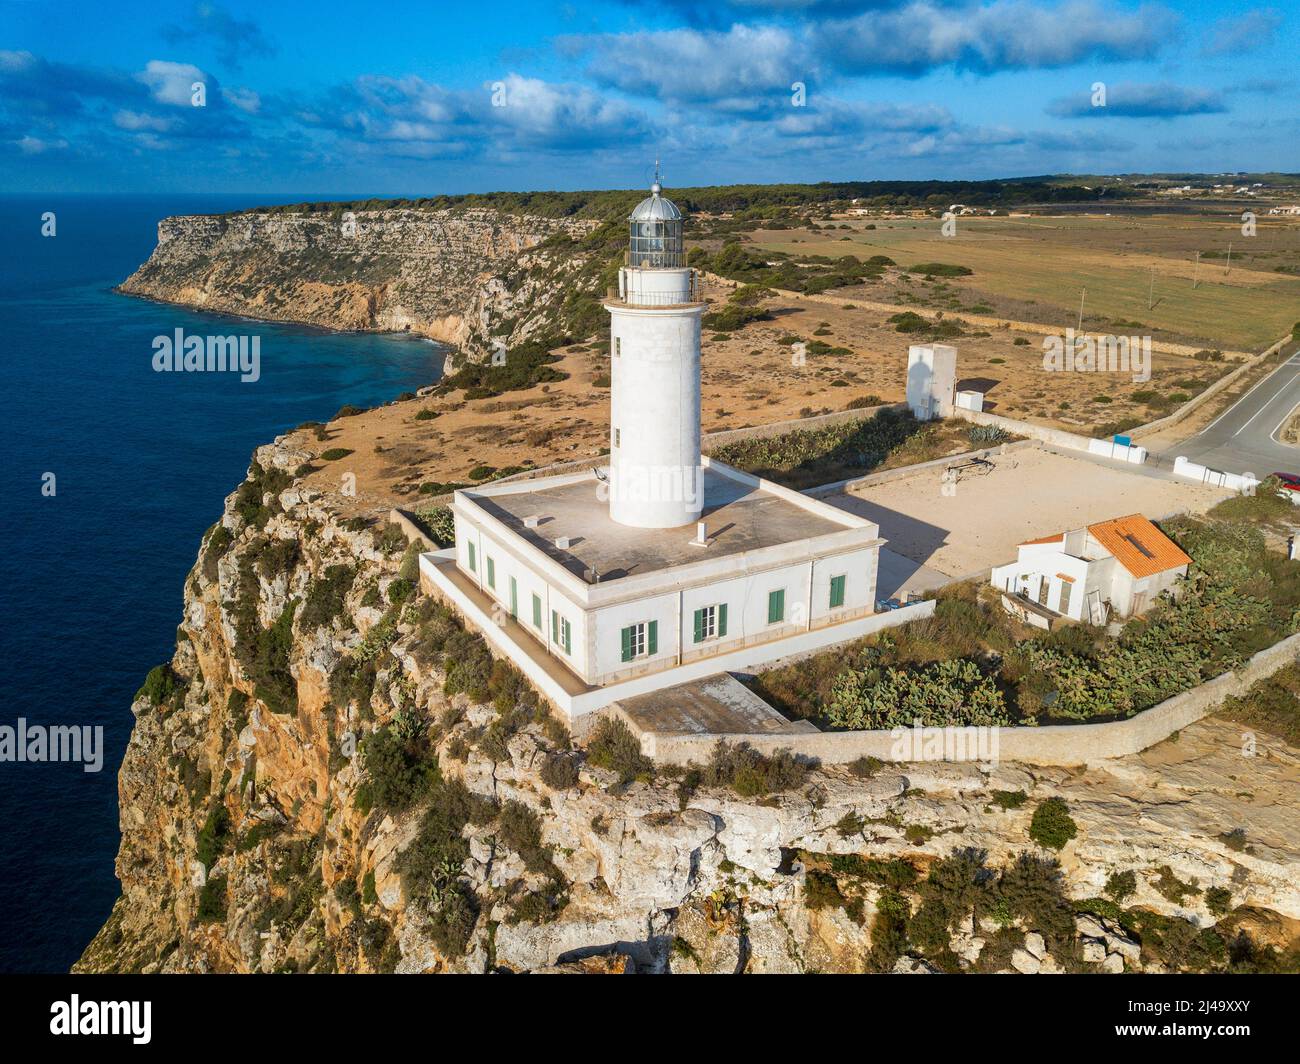 Veduta aerea del faro far de la Mola, Formentera, Isole Baleari, Spagna Foto Stock